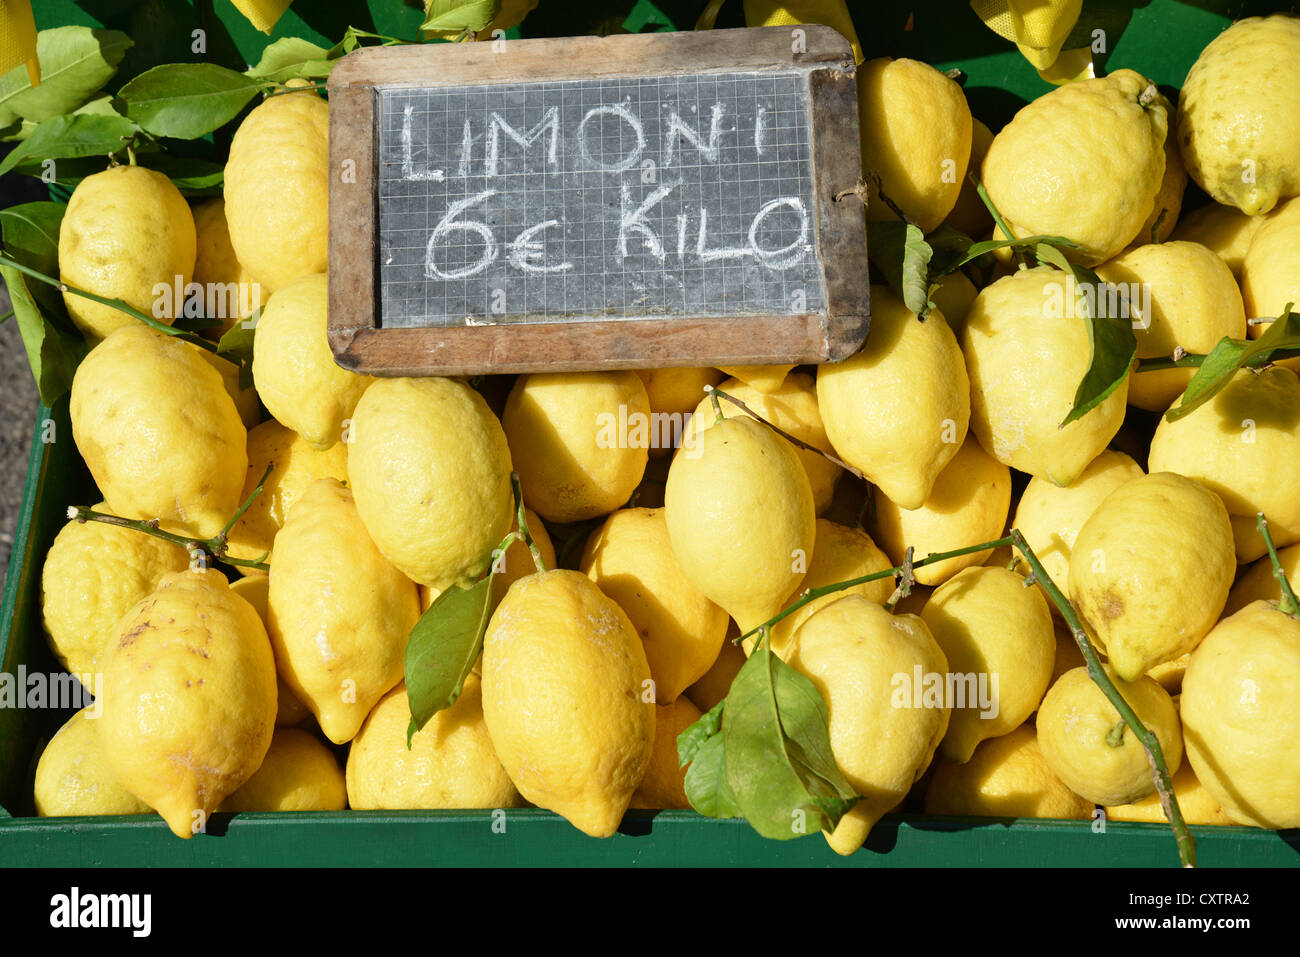 Limoni per la vendita in stallo street, Sirmione sul Lago di Garda, provincia di Brescia, regione Lombardia, Italia Foto Stock